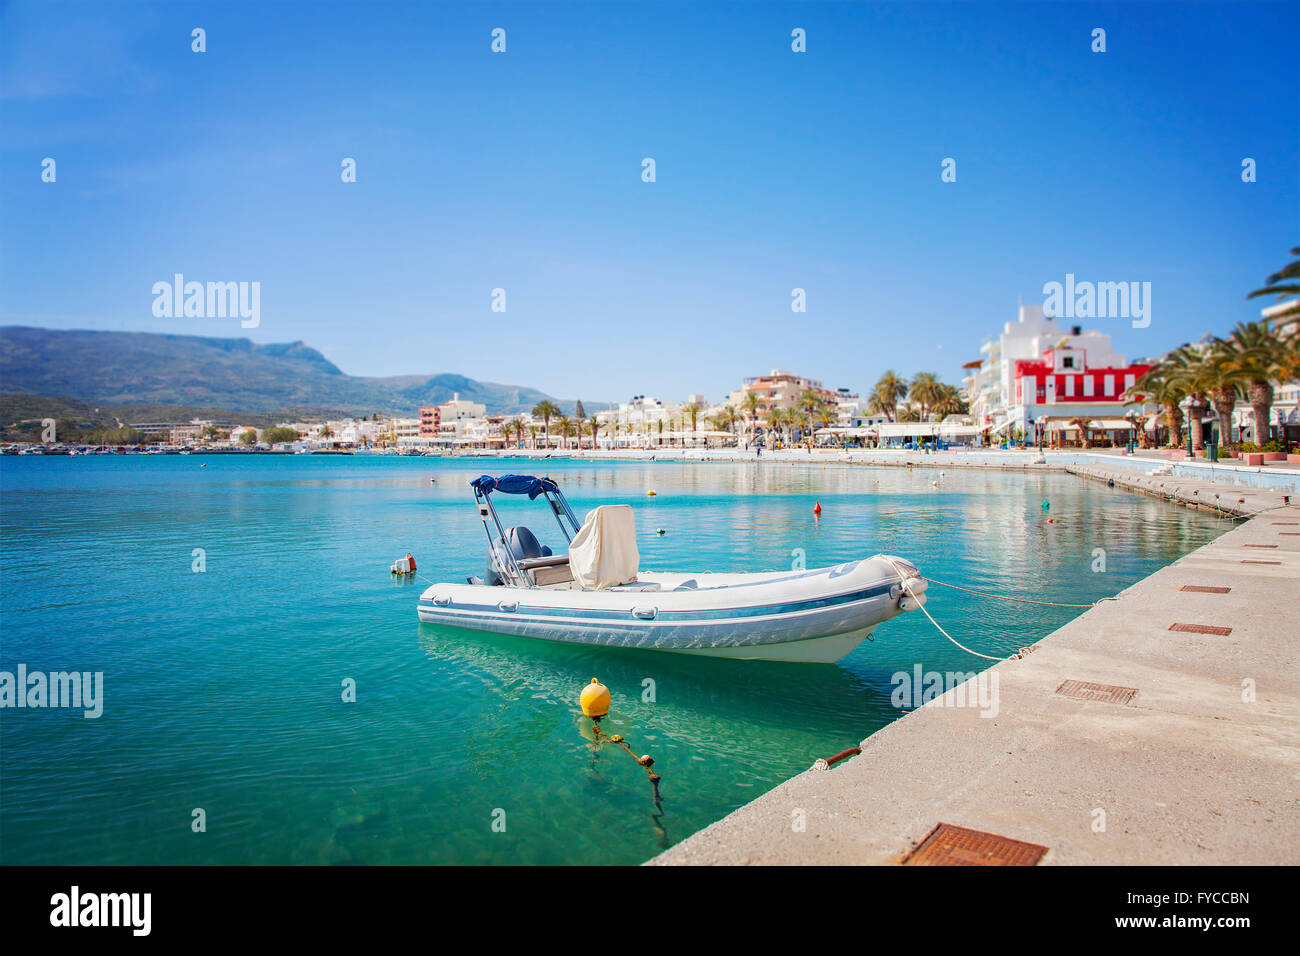 Image de la ville balnéaire de Sitia en Crète. La Grèce. Banque D'Images